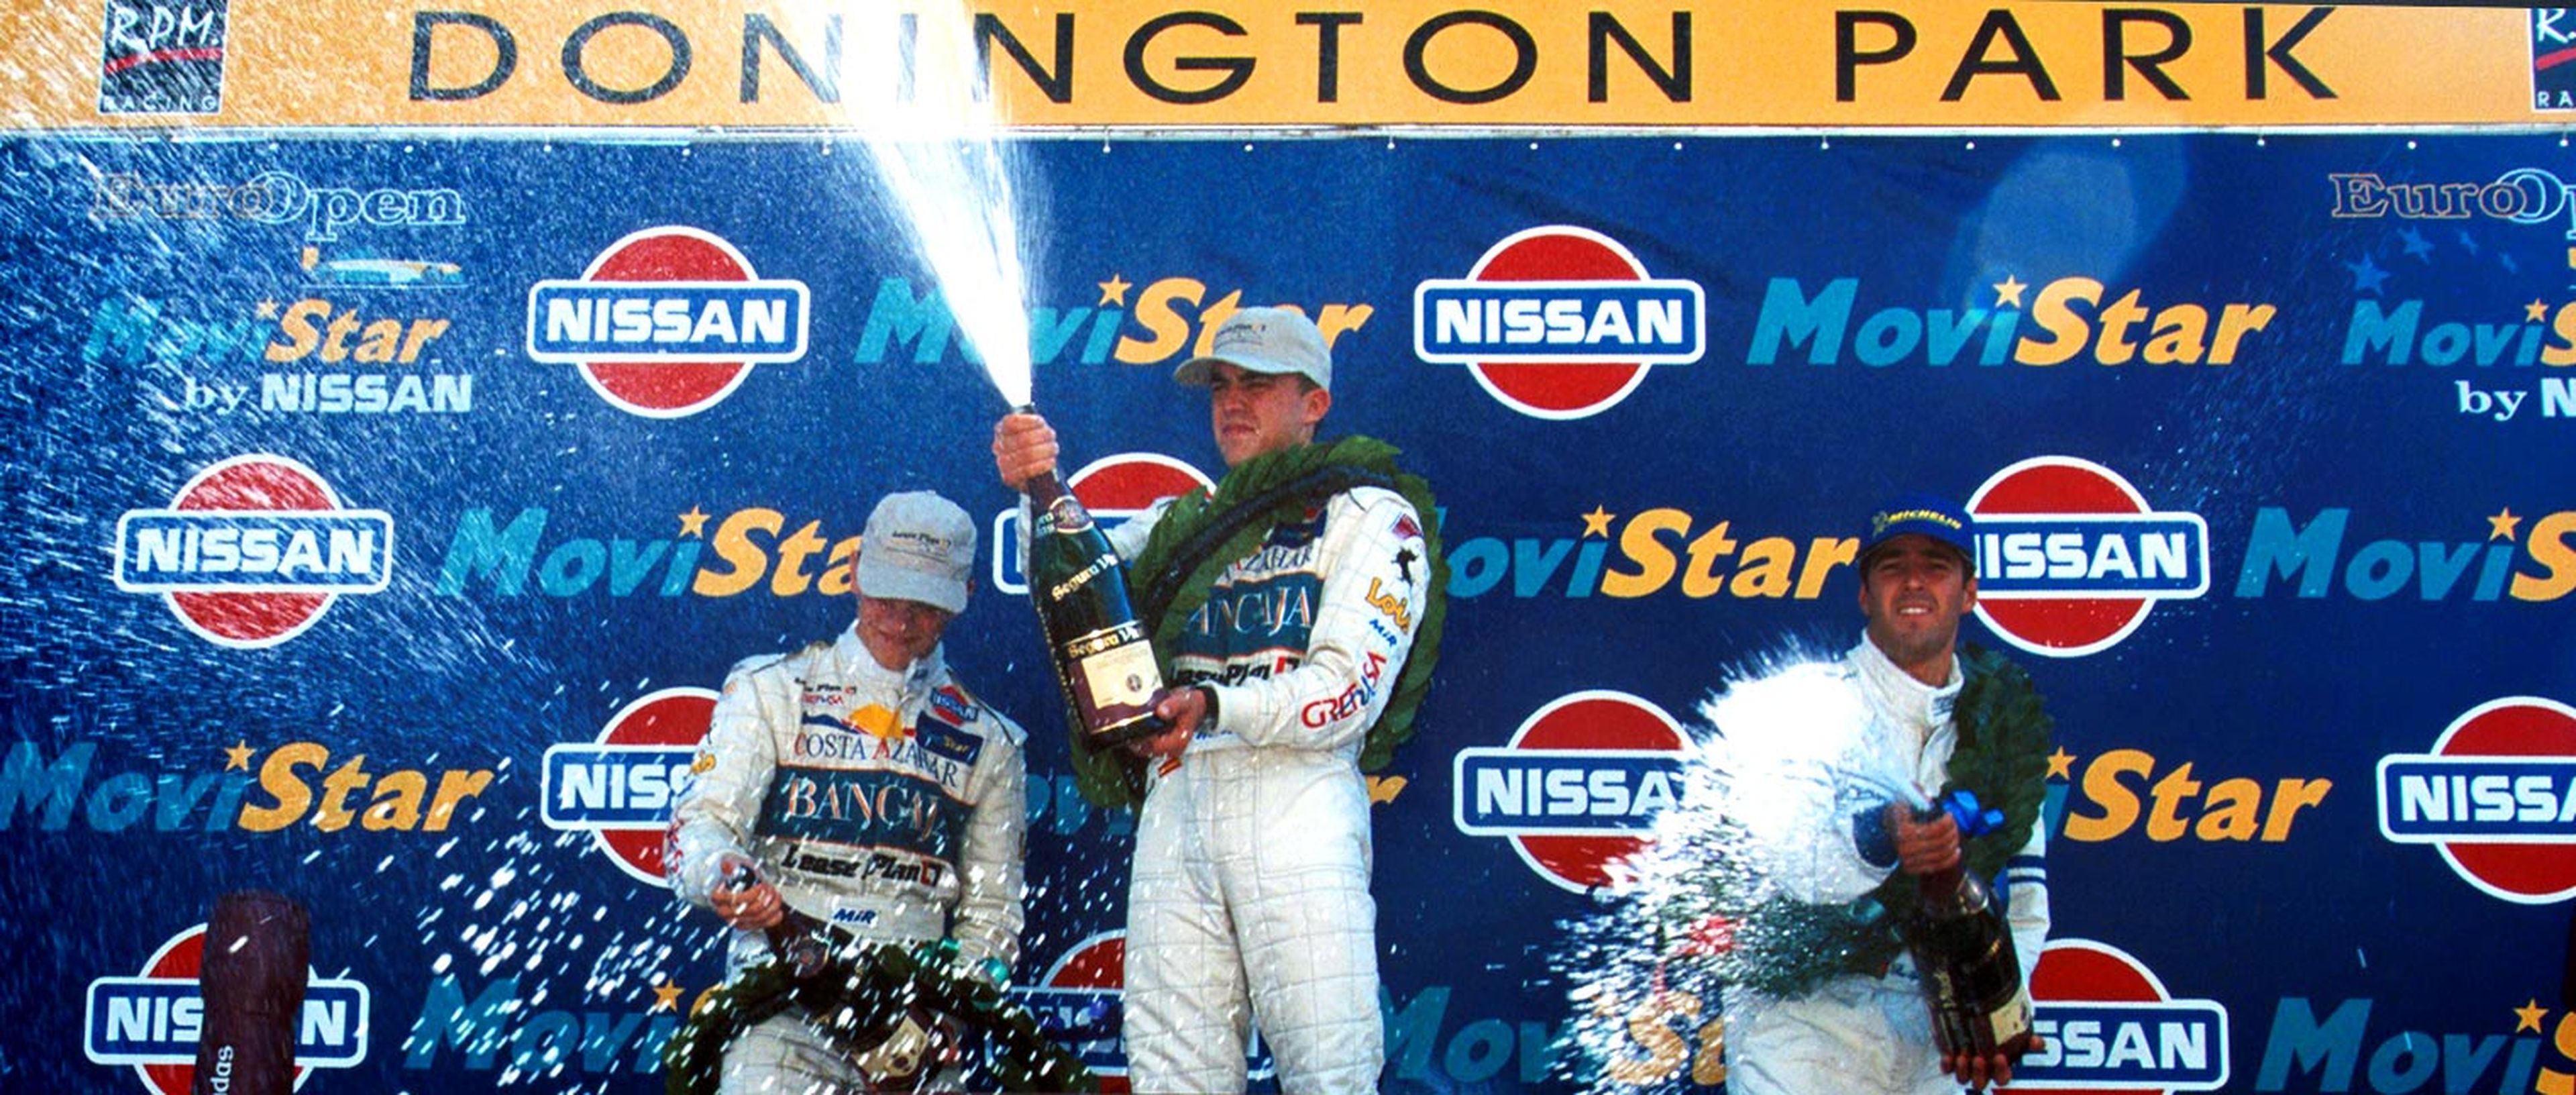 Fernando celebrando su victoria en la Fórmula Nissan en 1999